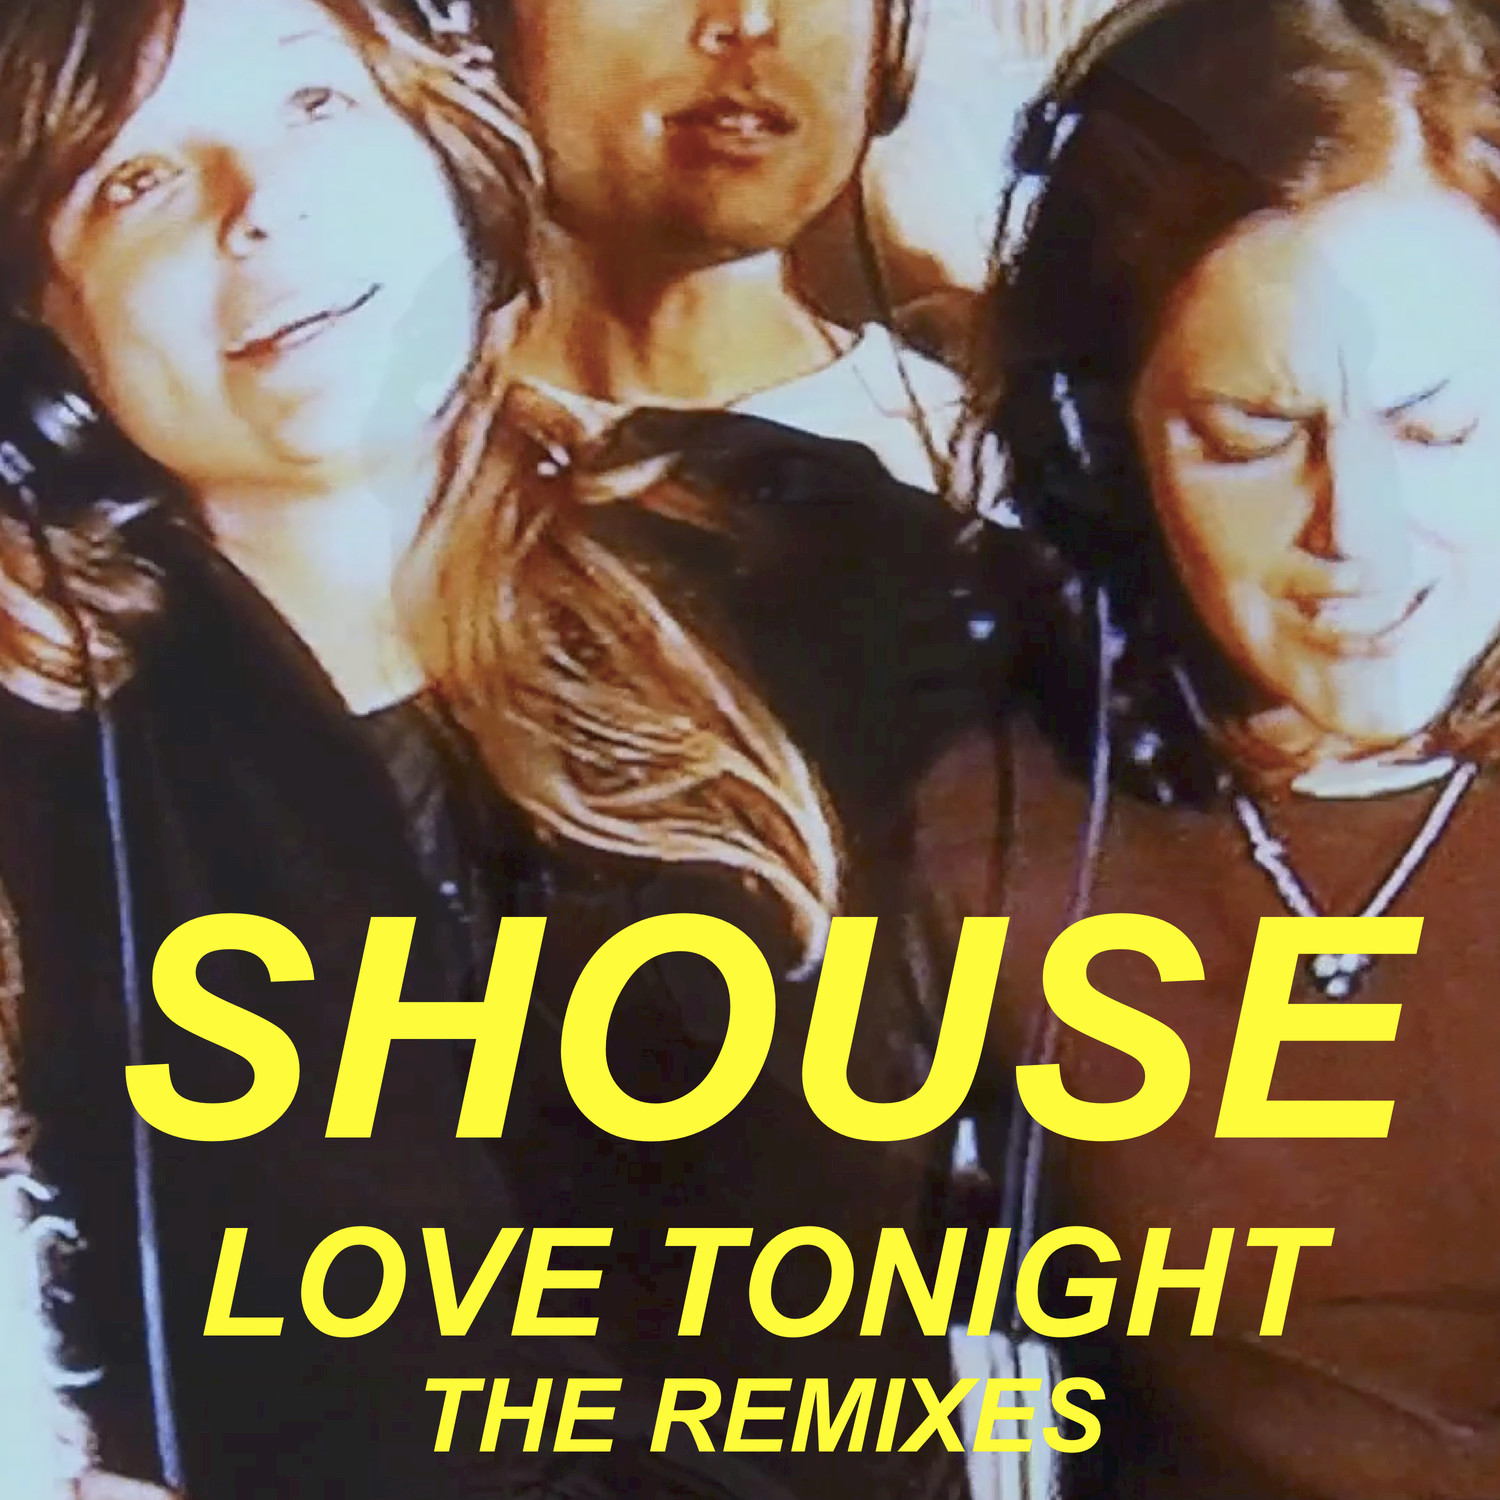 Tonight музыка. Love Tonight. Shouse группа. Shouse Love Tonight. Группа Shouse Love Tonight.